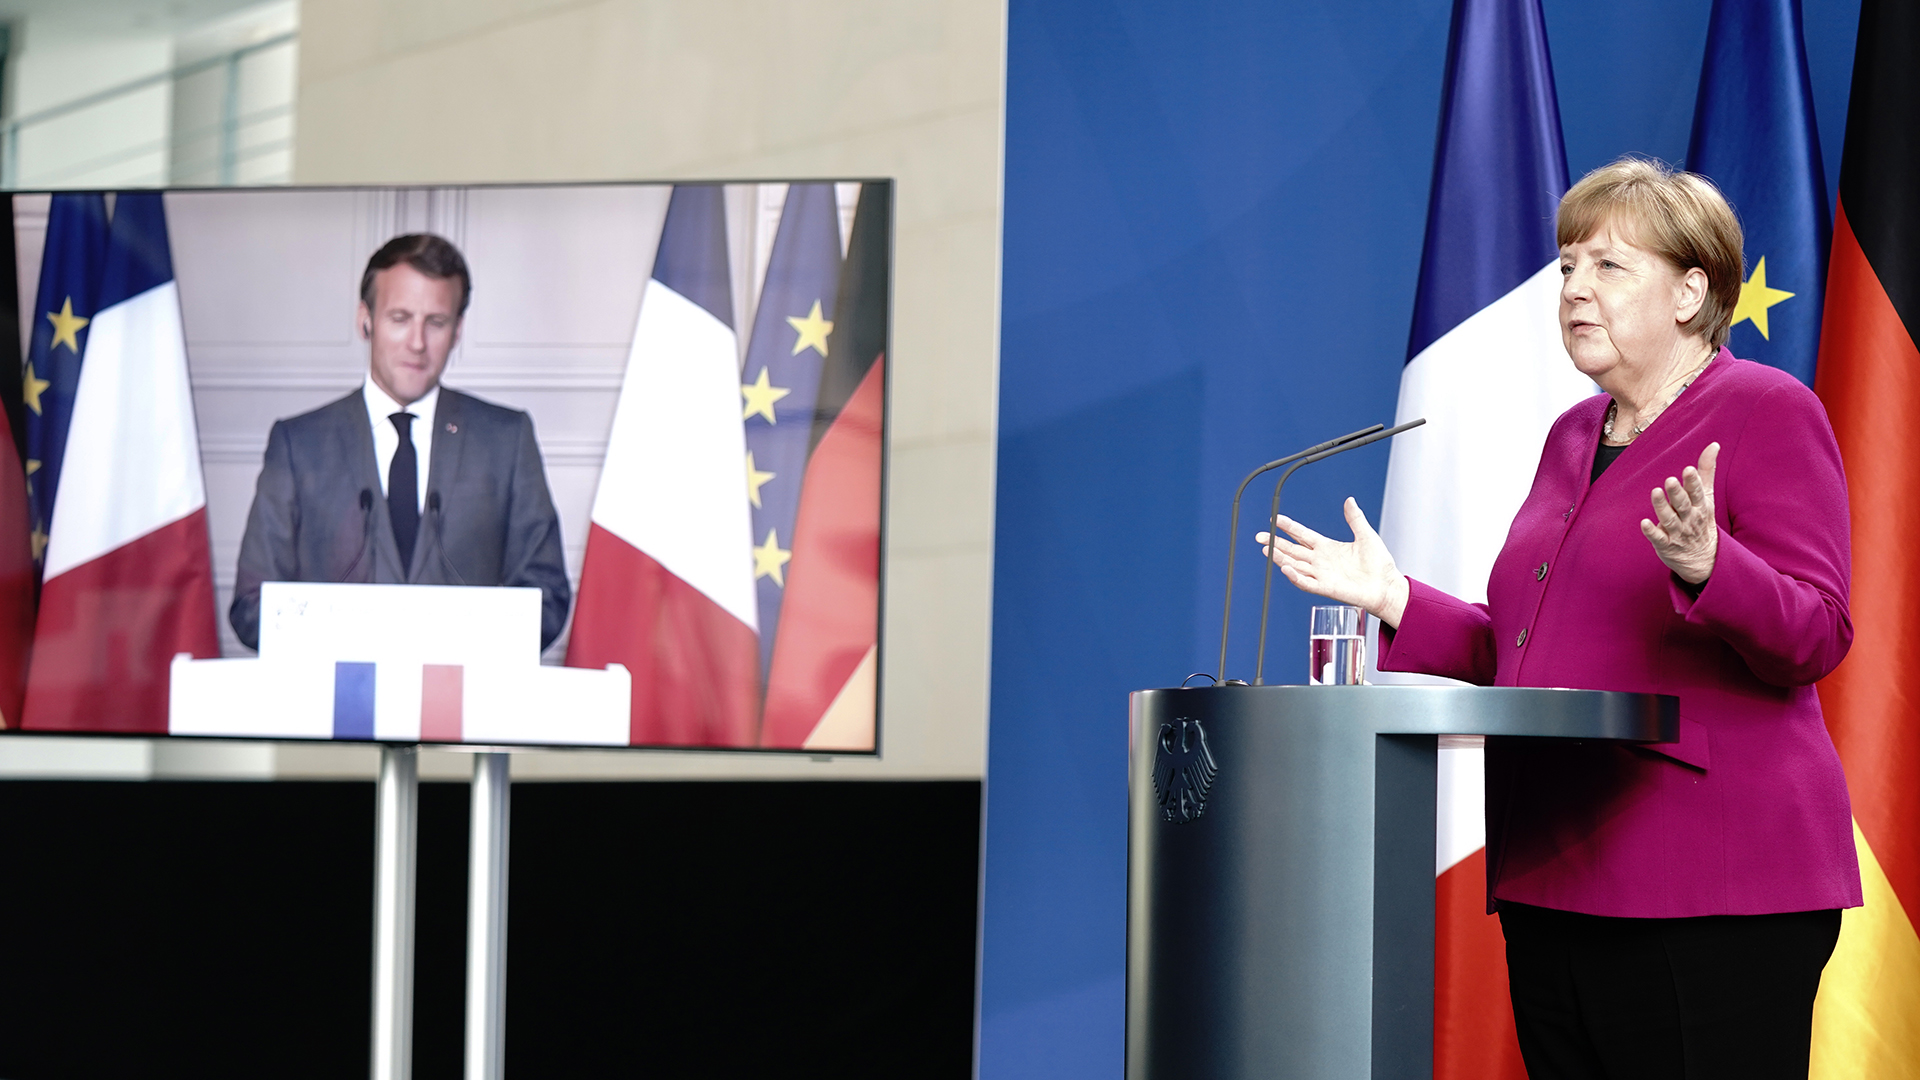 Bundeskanzlerin Angela Merkel kommt nach einer gemeinsamen Videokonferenz zu eine Pressekonferenz mit Frankreichs Präsident Emmanuel Macron (per Video zugeschaltet). | dpa